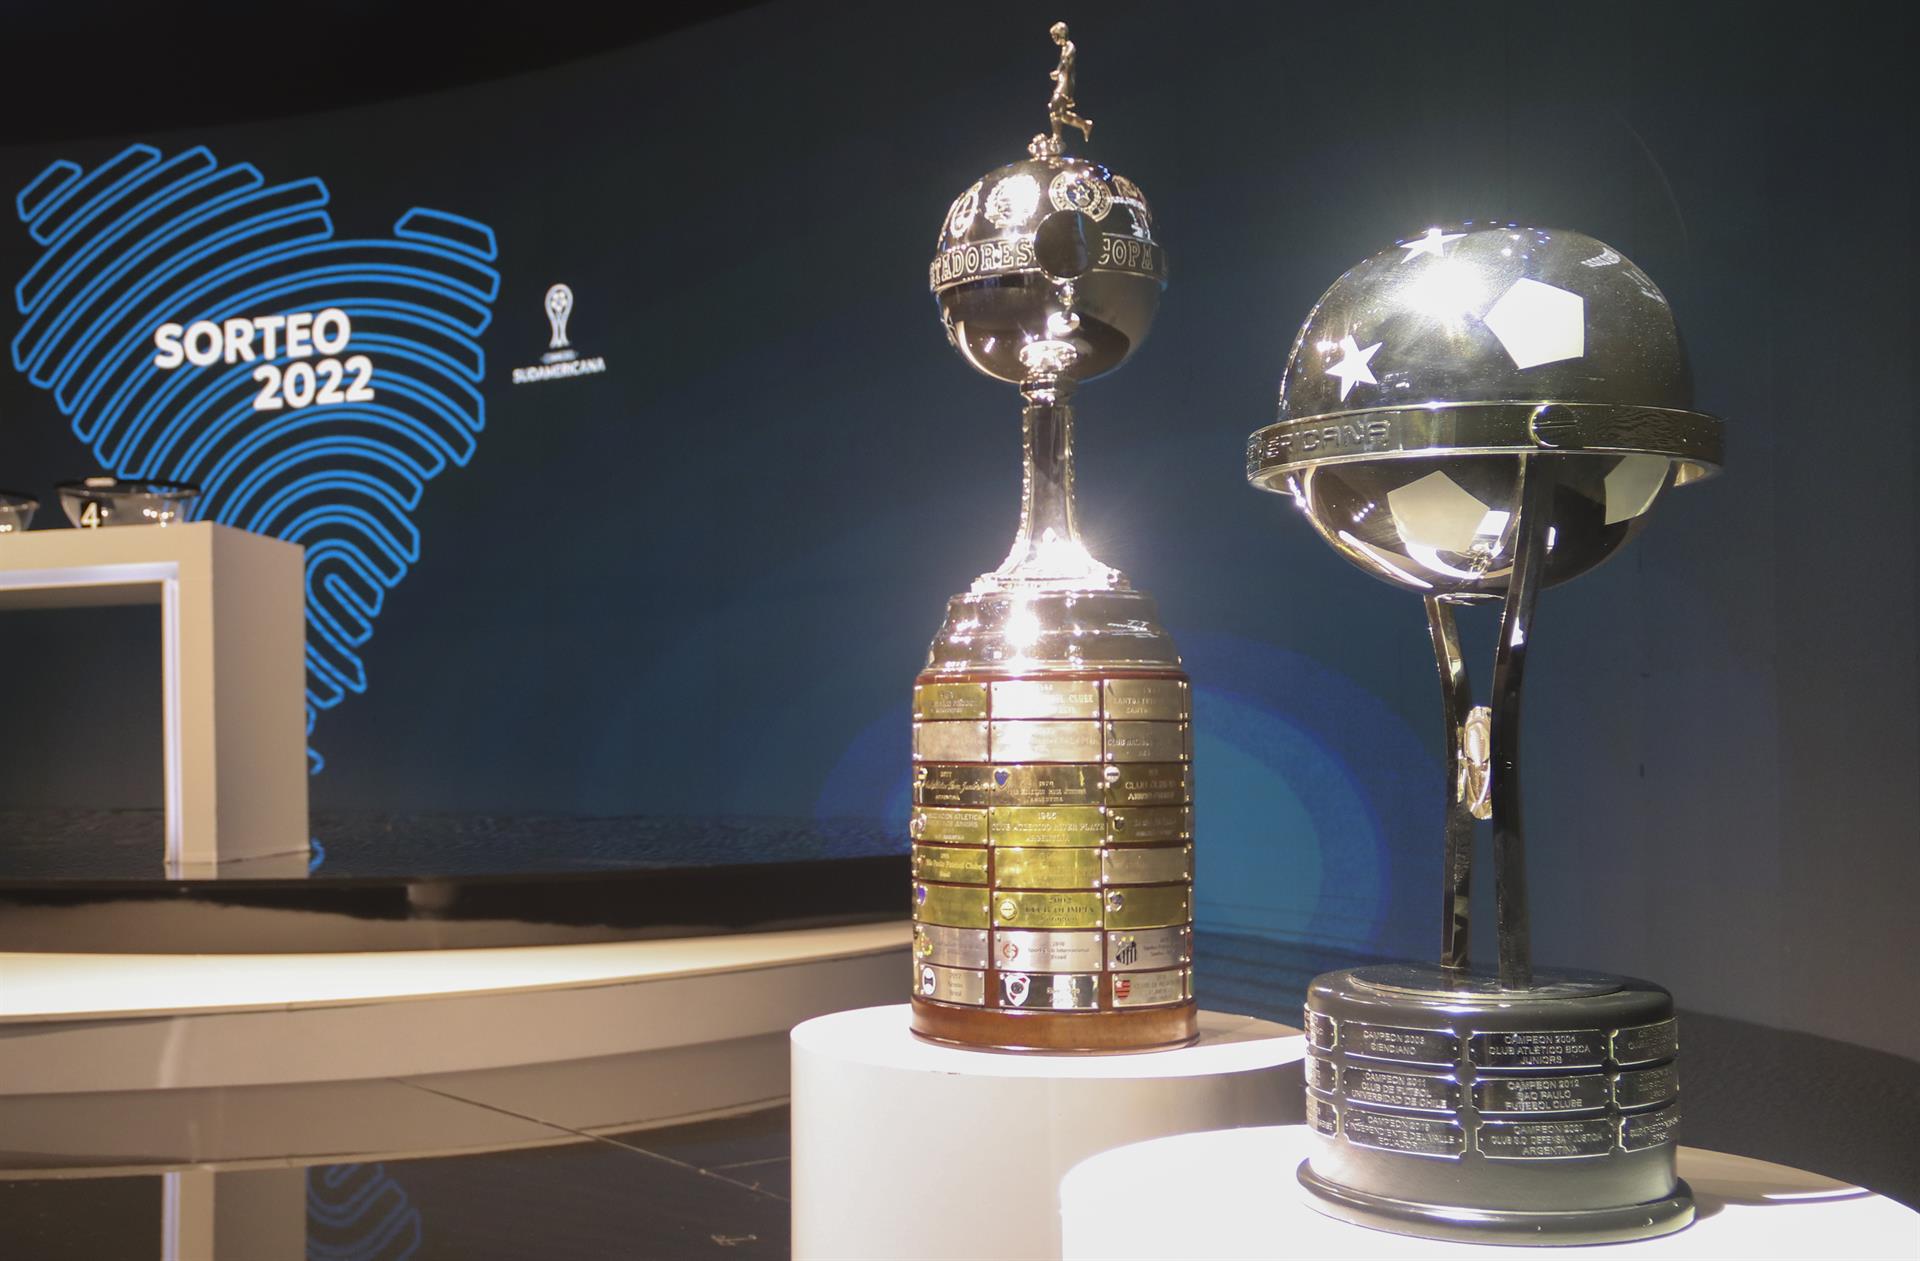 Conmebol definió el calendario de la Copa Libertadores y Copa